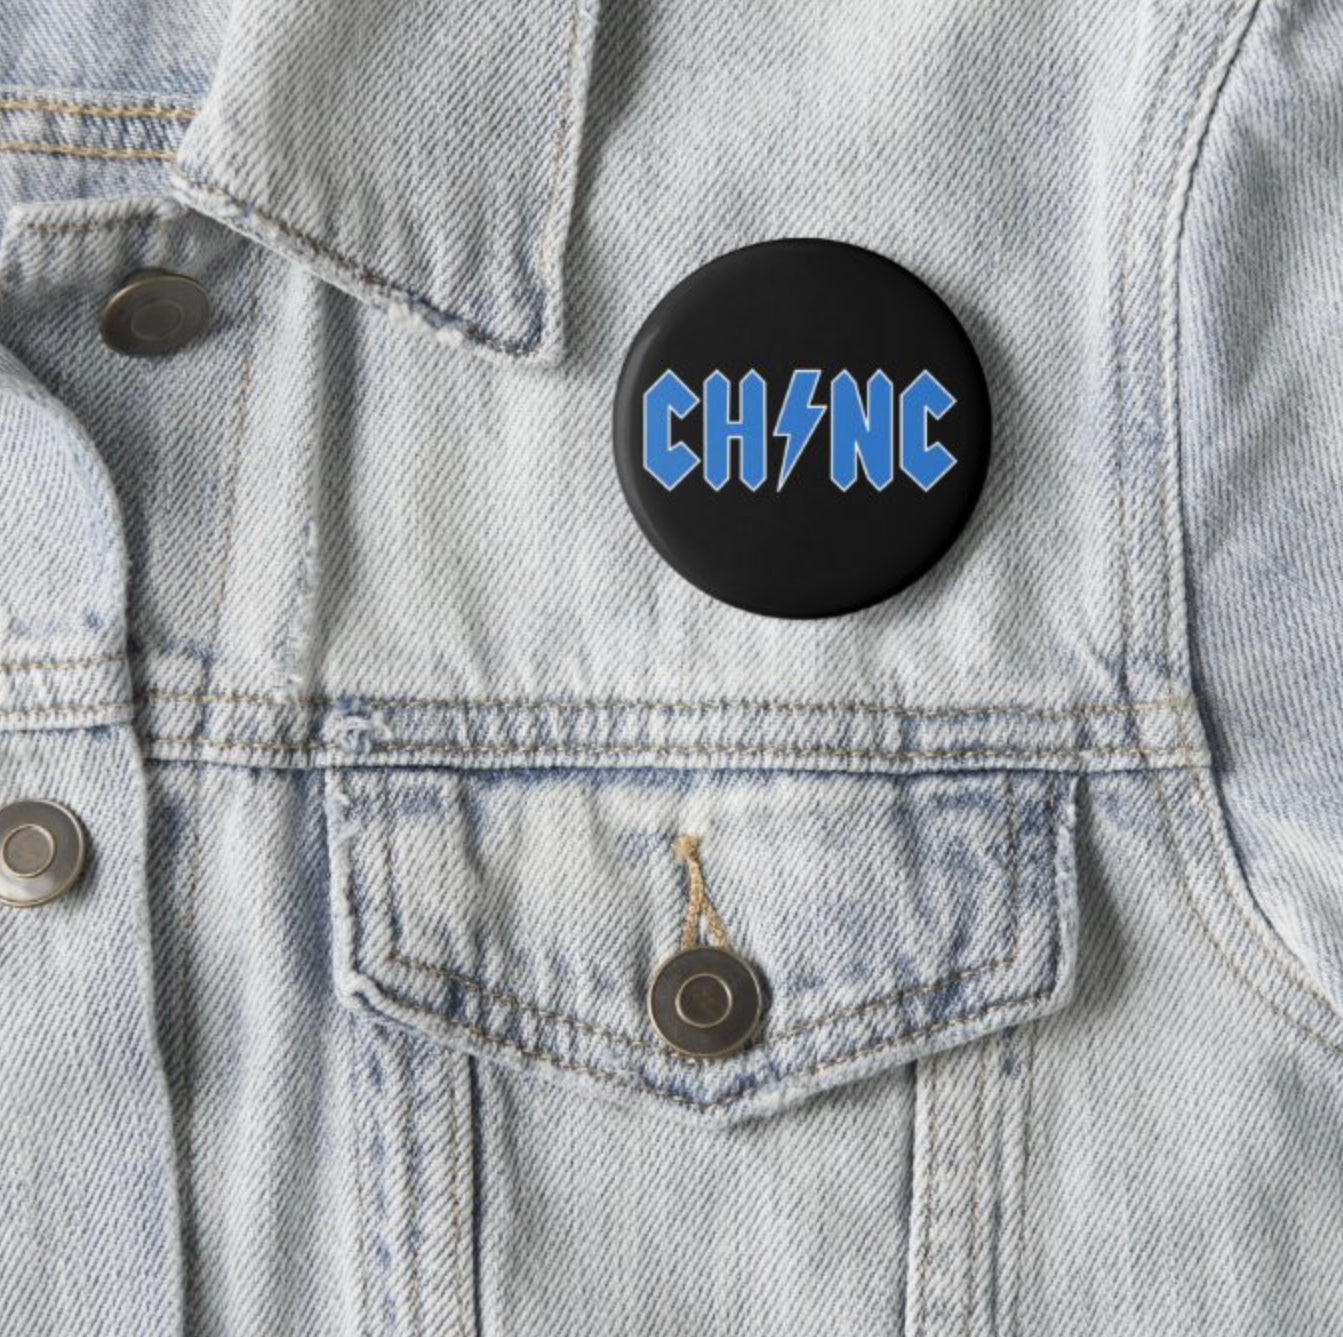 Chapel Hill Rock Font Button Pin by Shrunken Head Brand